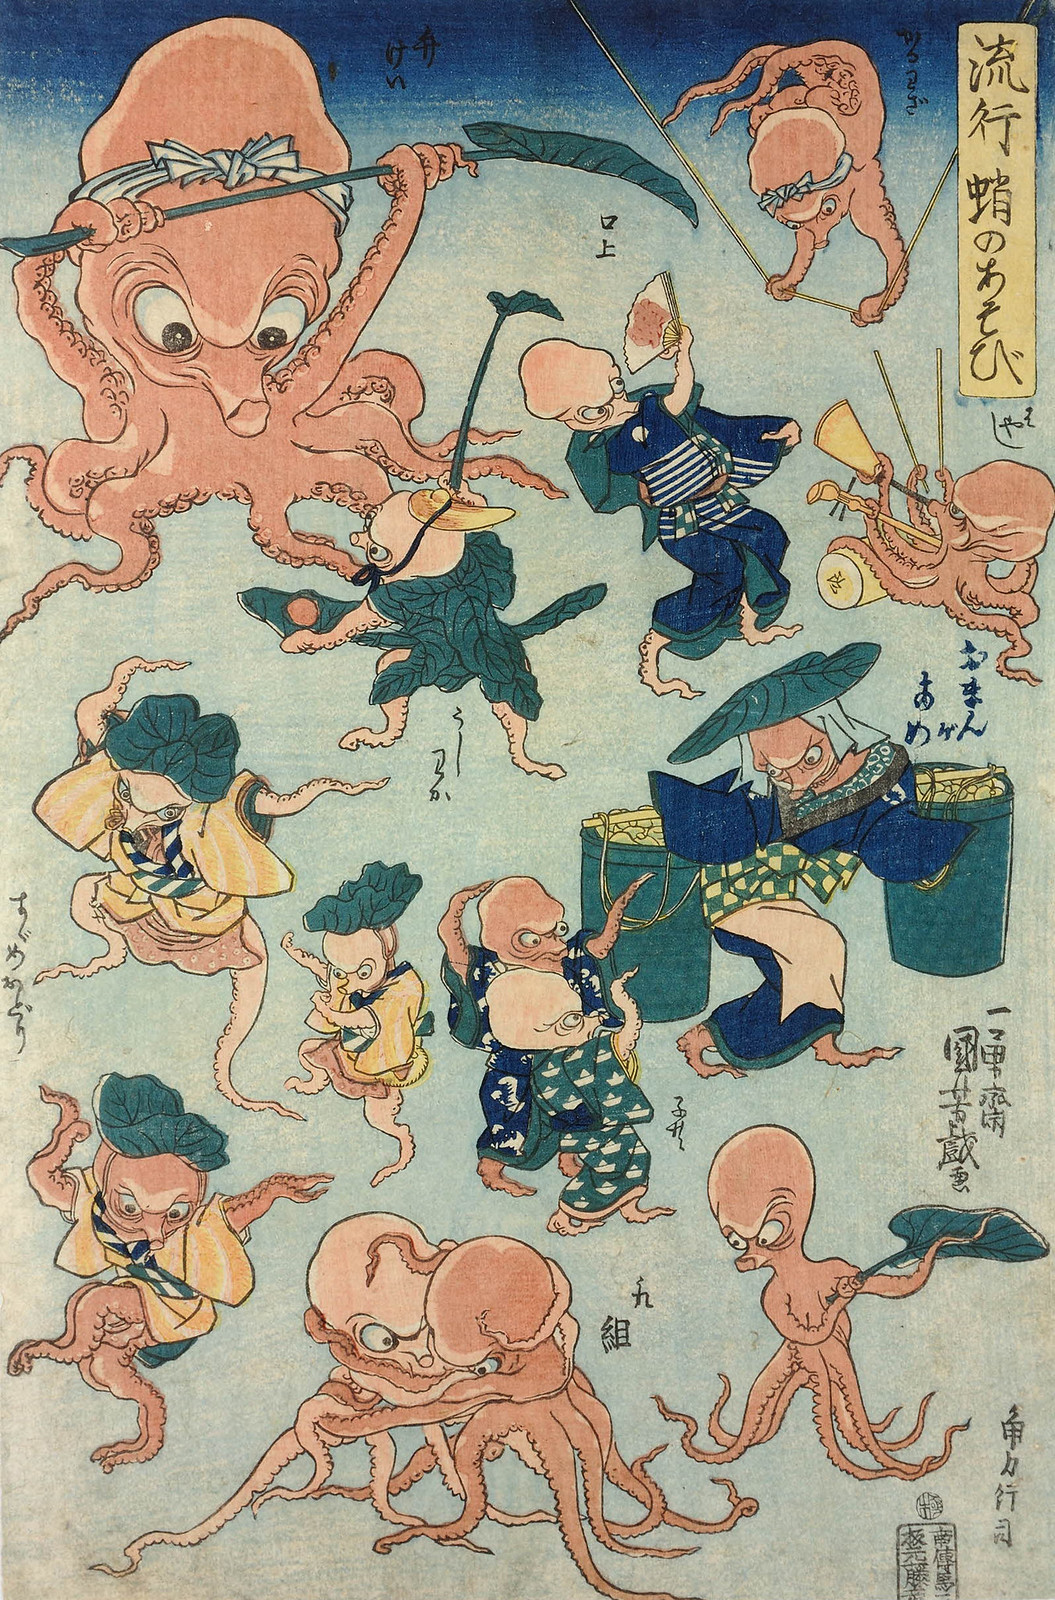 Utagawa Kuniyoshi - Ryuko tako no asobi (Fashionable Octopus Games) 1840-42